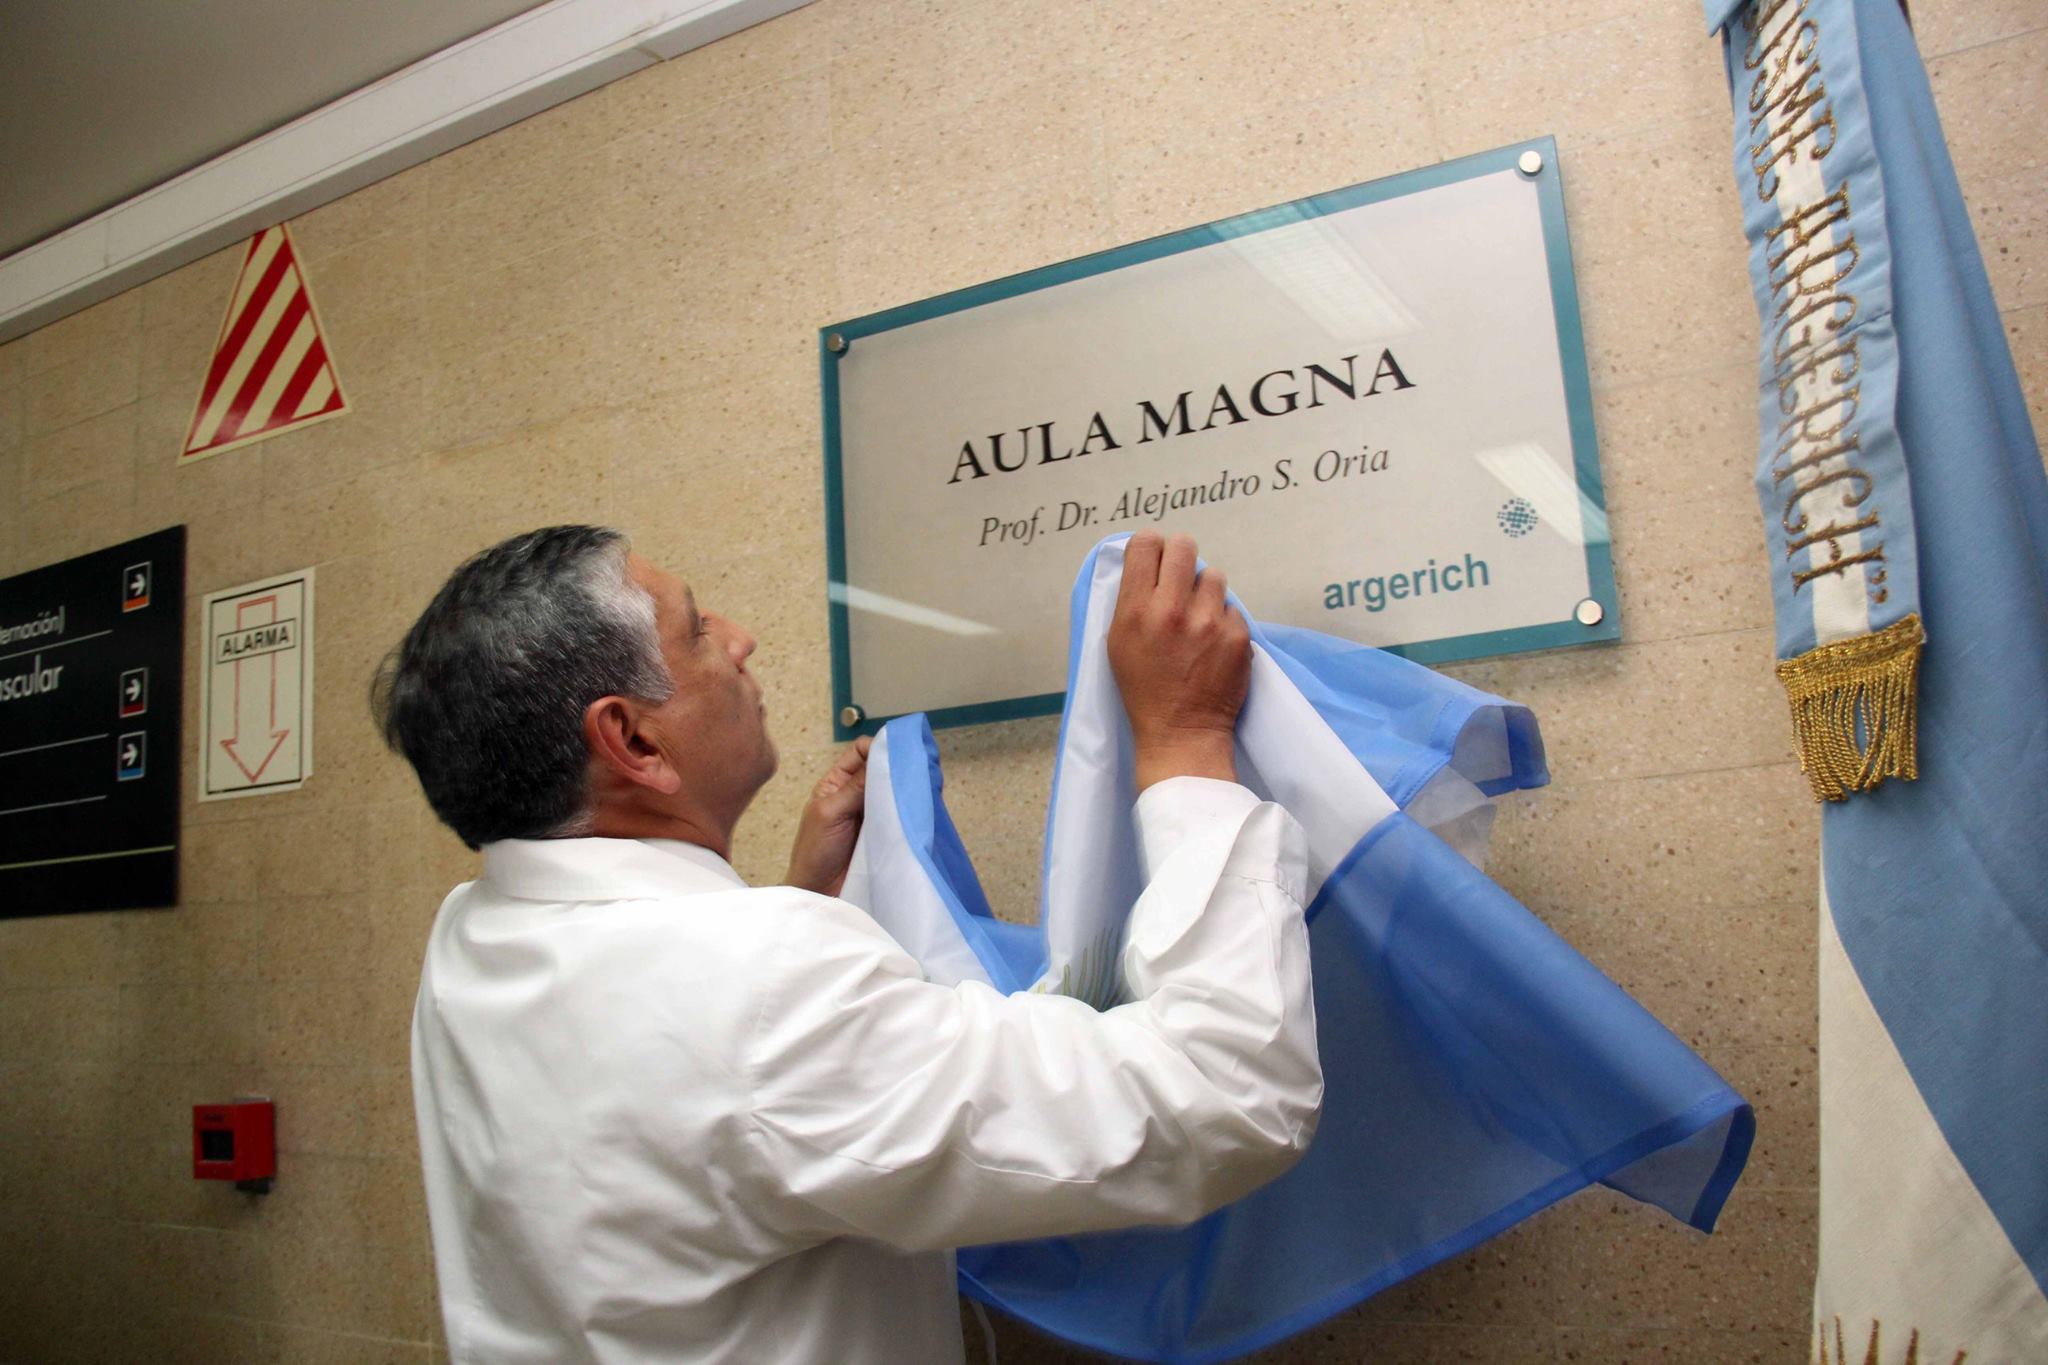 Aula Magna del Hospital Argerich nombrada “Prof. Dr. Alejandro S. Oria”